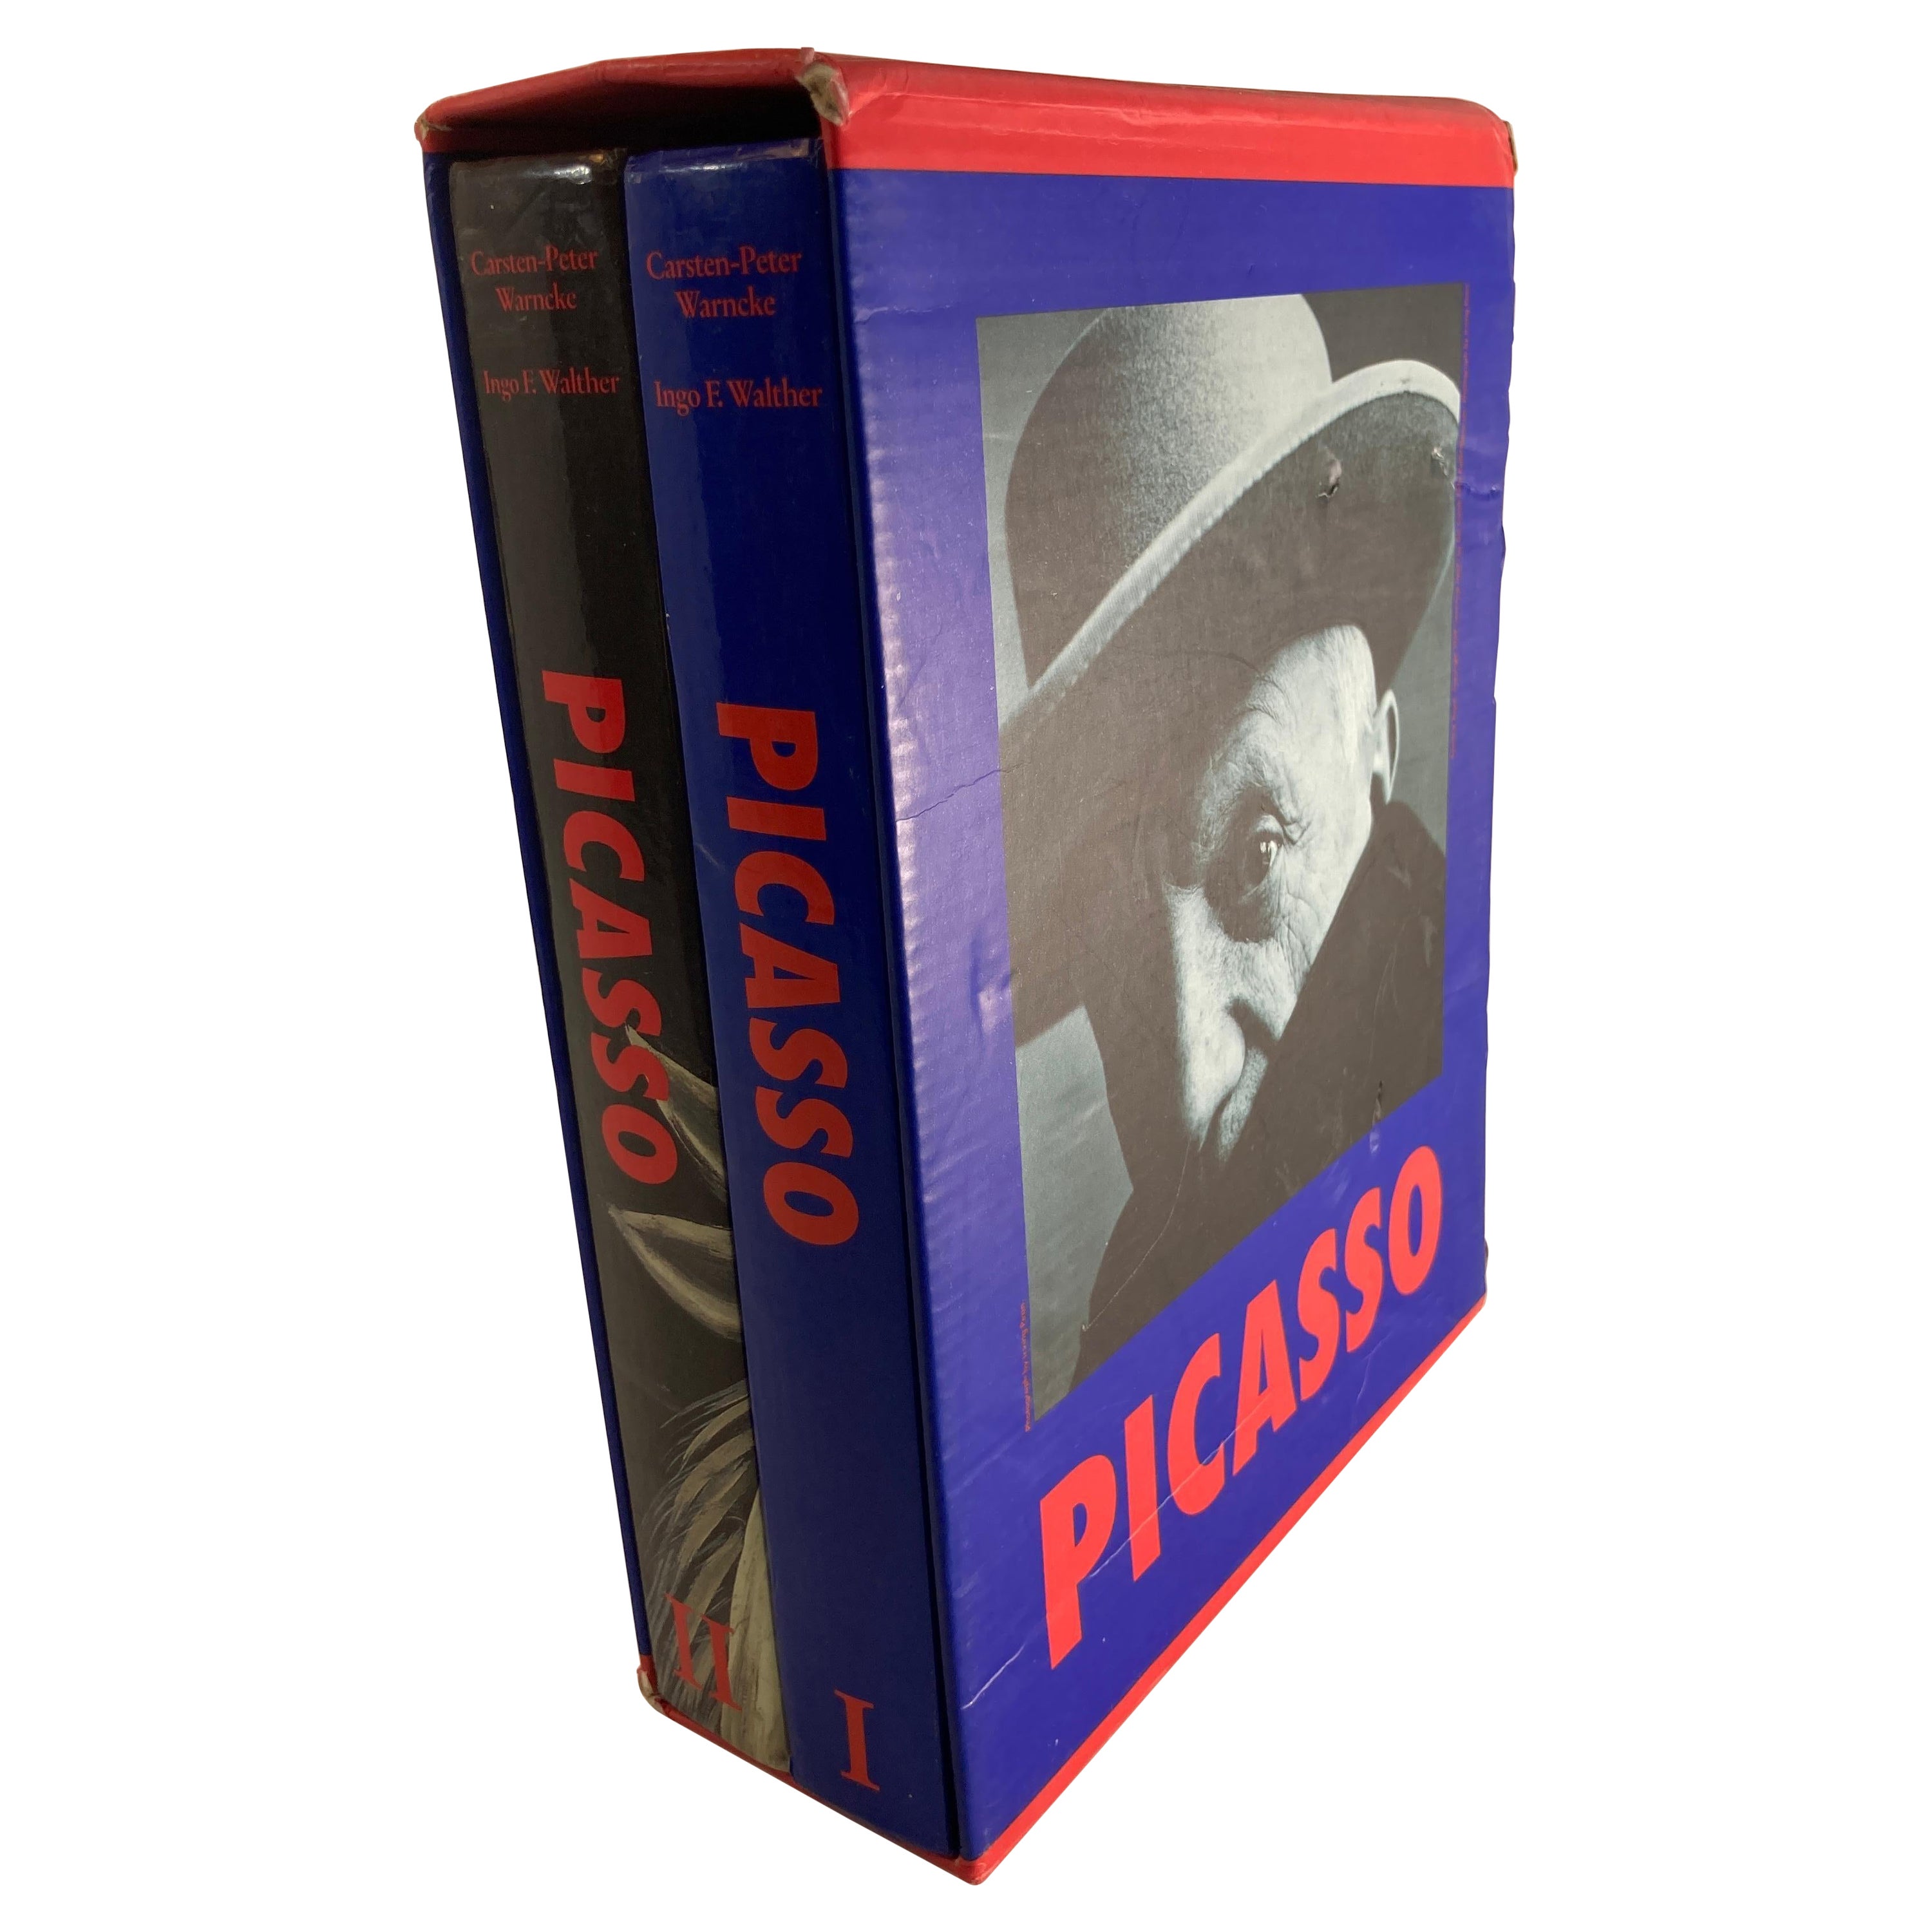 Picasso 2 Volume Box Set Carsten-Peter Warncke Pub Benedikt Taschen 1995